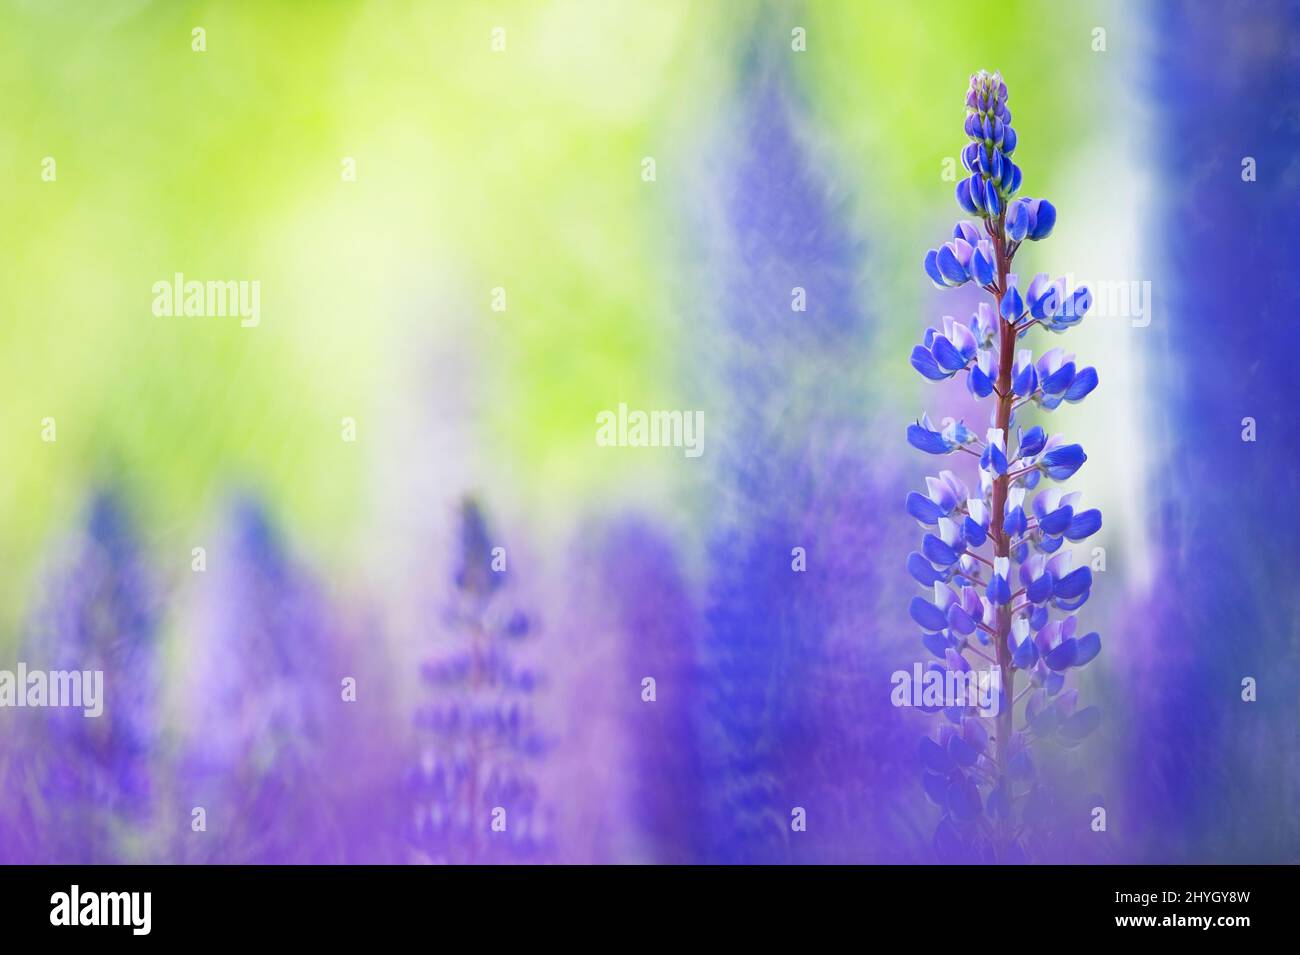 Lupins bleus (Lupinus polyphyllus) qui fleurissent dans le champ. Mise au point sélective, arrière-plan flou avec effet de flou flou. Banque D'Images